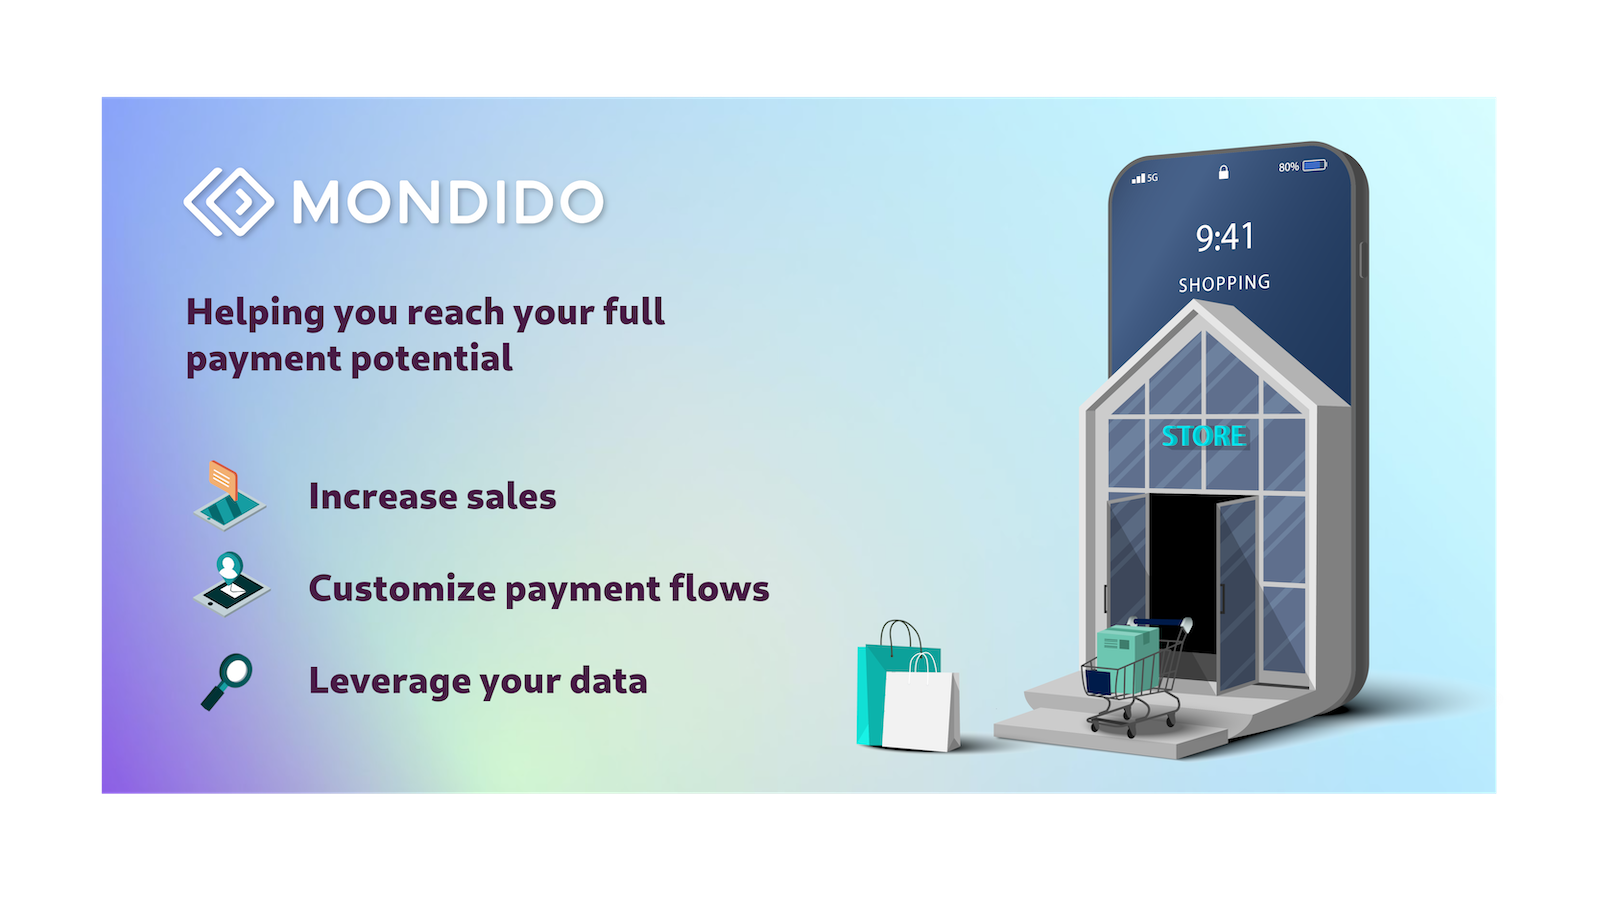 Mondido hjælper dig med at nå dit fulde potentiale